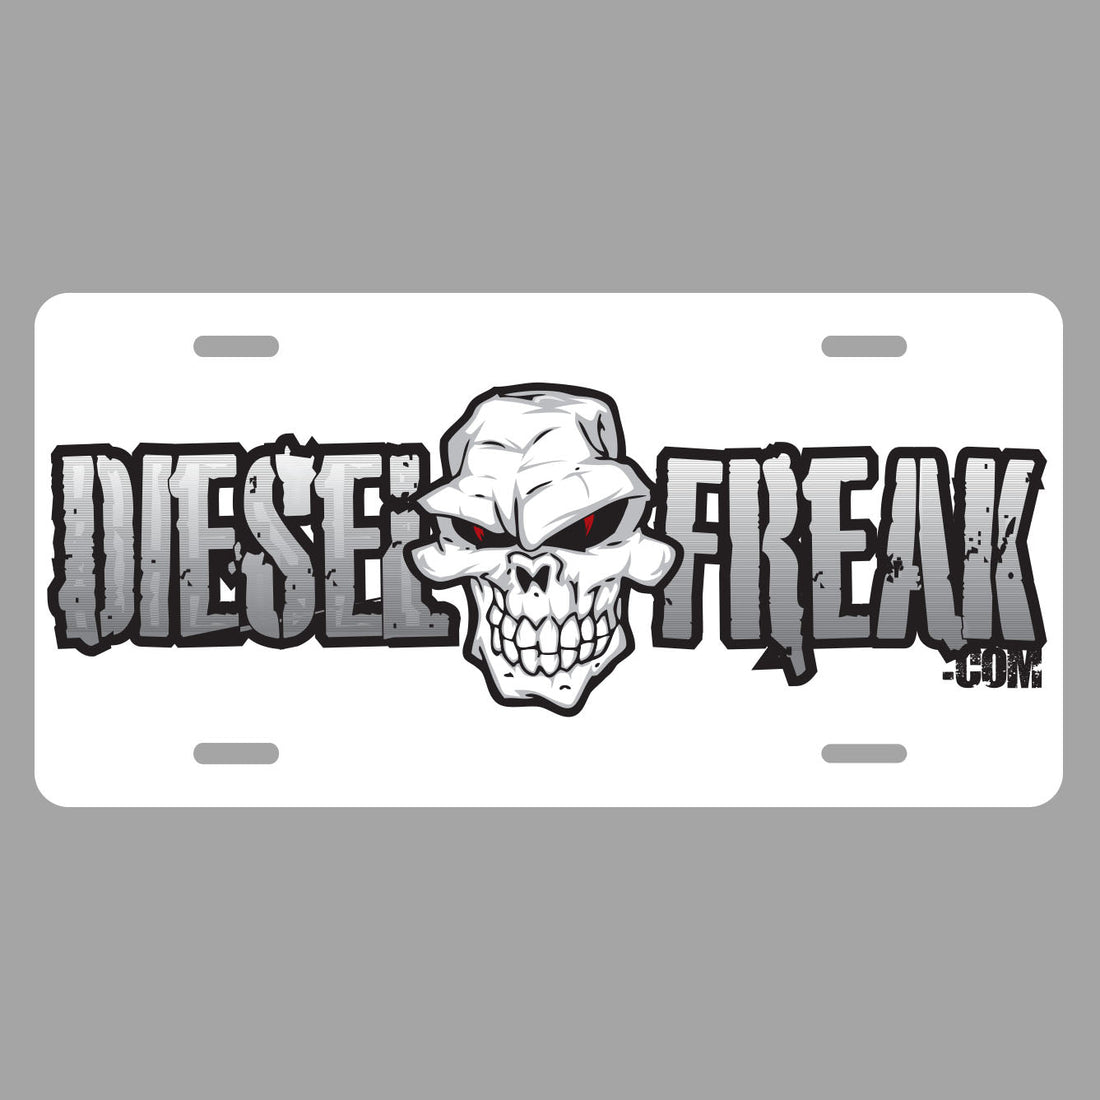 Diesel Freak License Plate - Diesel Freak